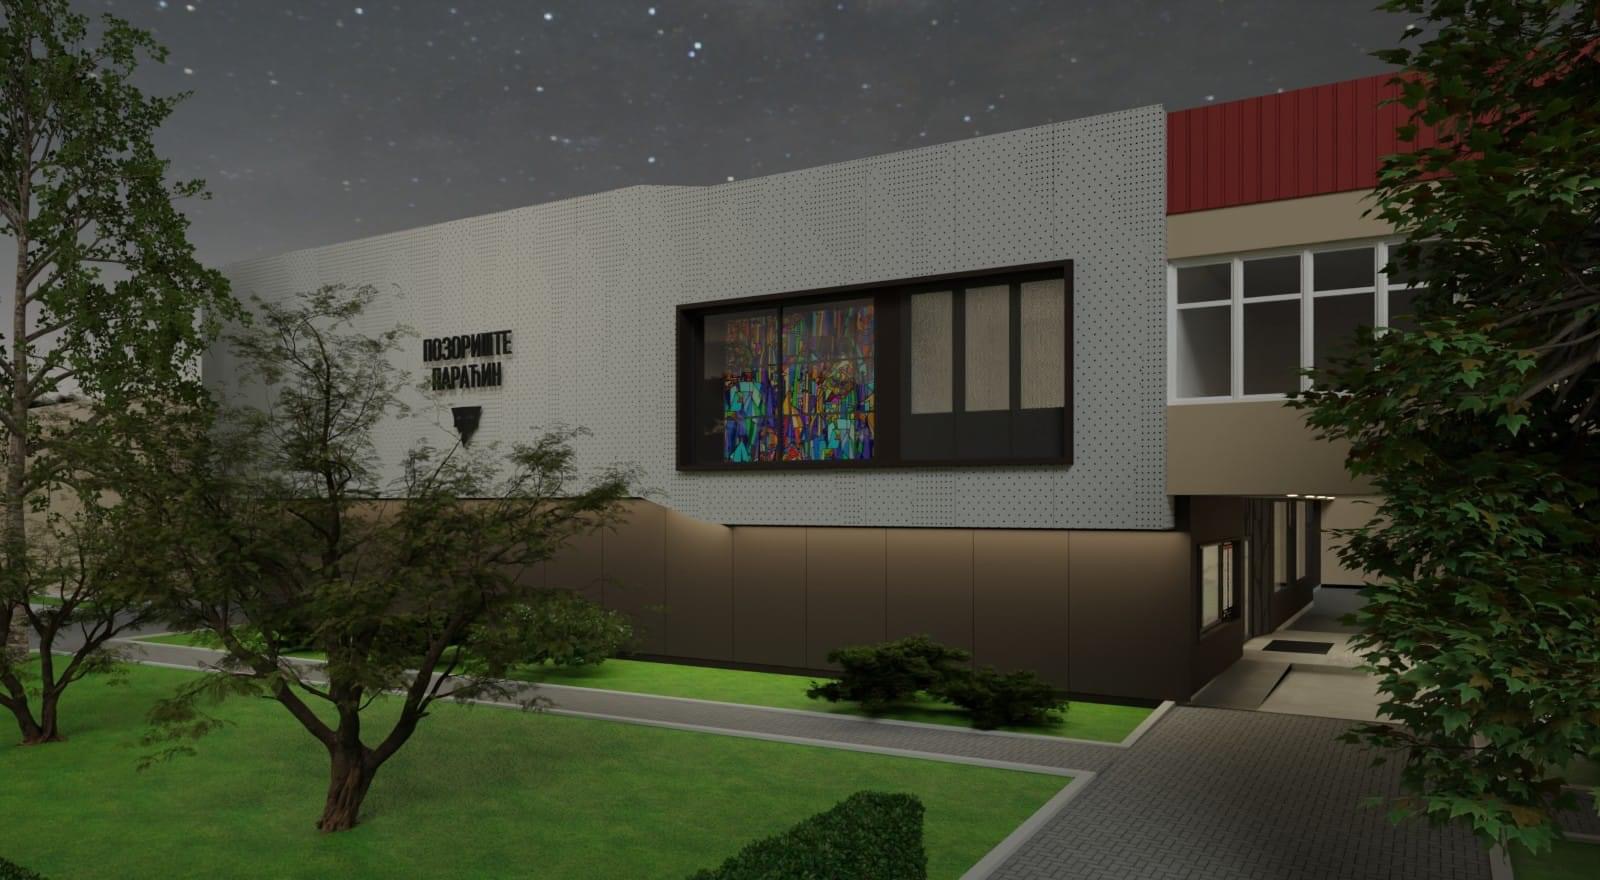 Opština Paraćin prezentovala projekat rekonstrukcije pozorišta i najavila izgradnju nove bioskopske i pozorišne sale